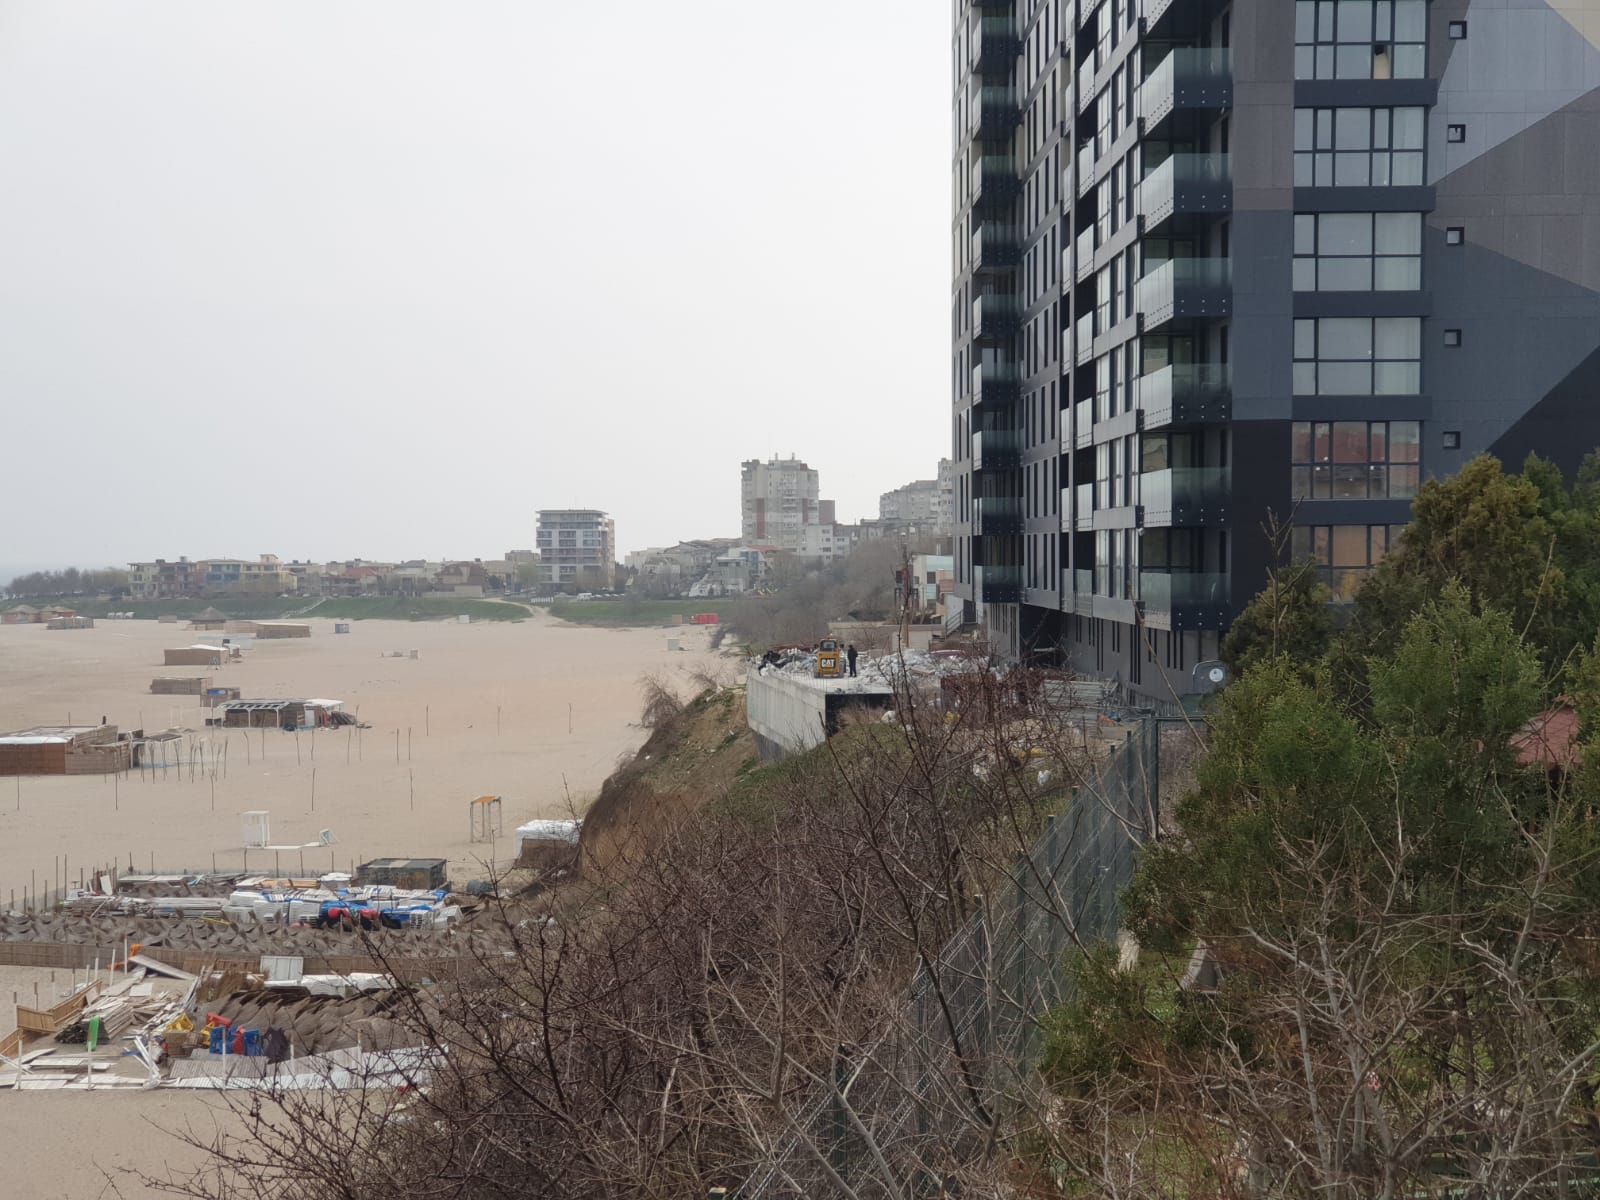 Plajele, loc de aruncat gunoaie. A apărut chiar și un container părăsit